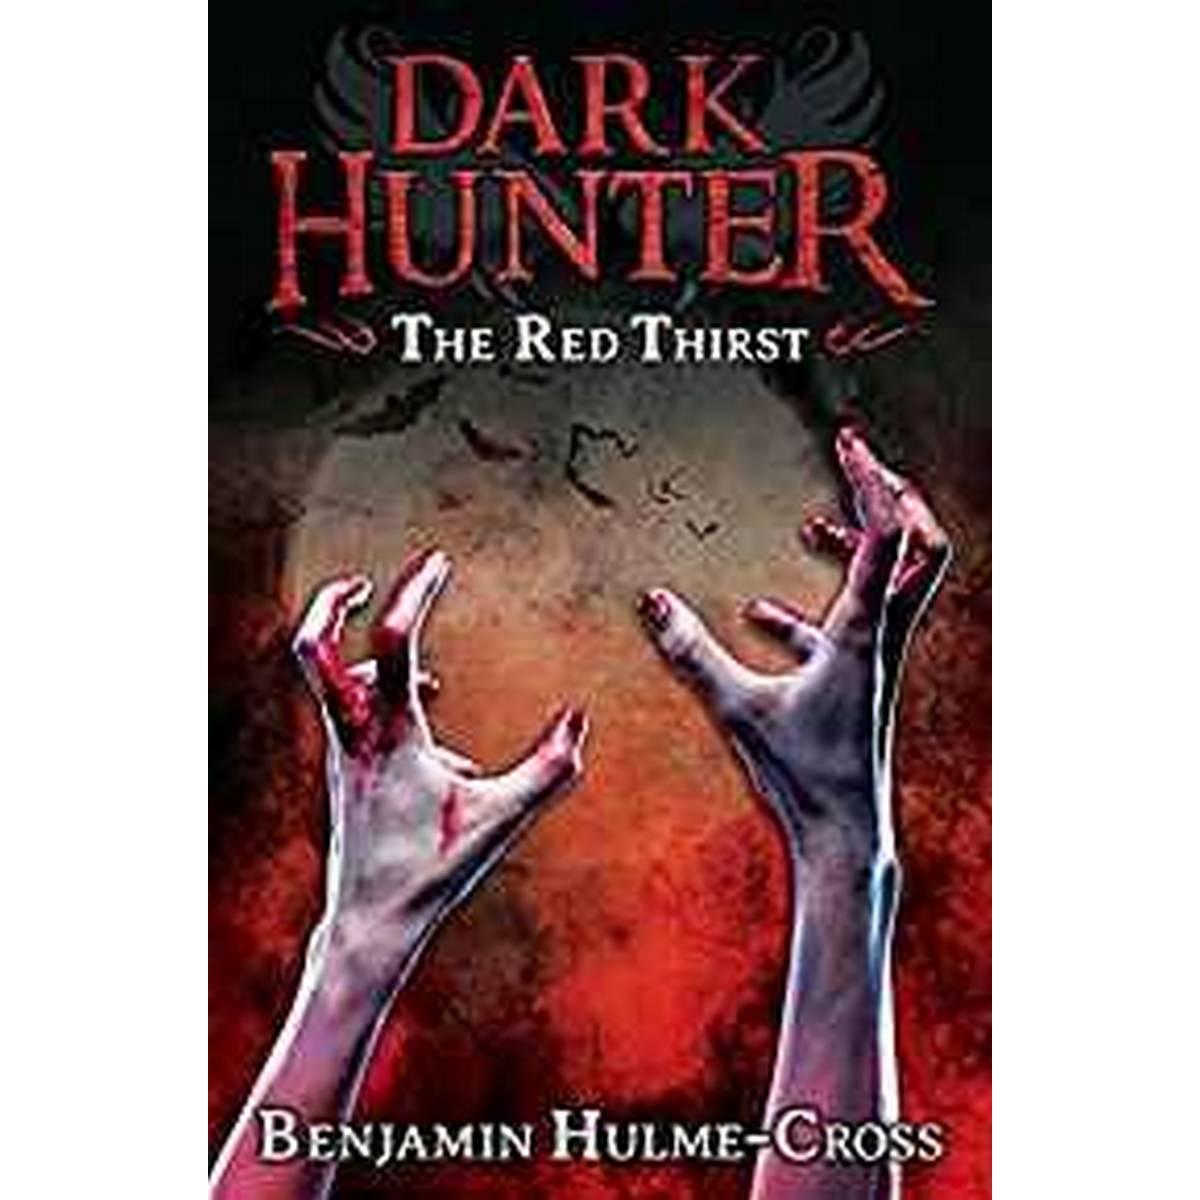 The Red Thirst (Dark Hunter)